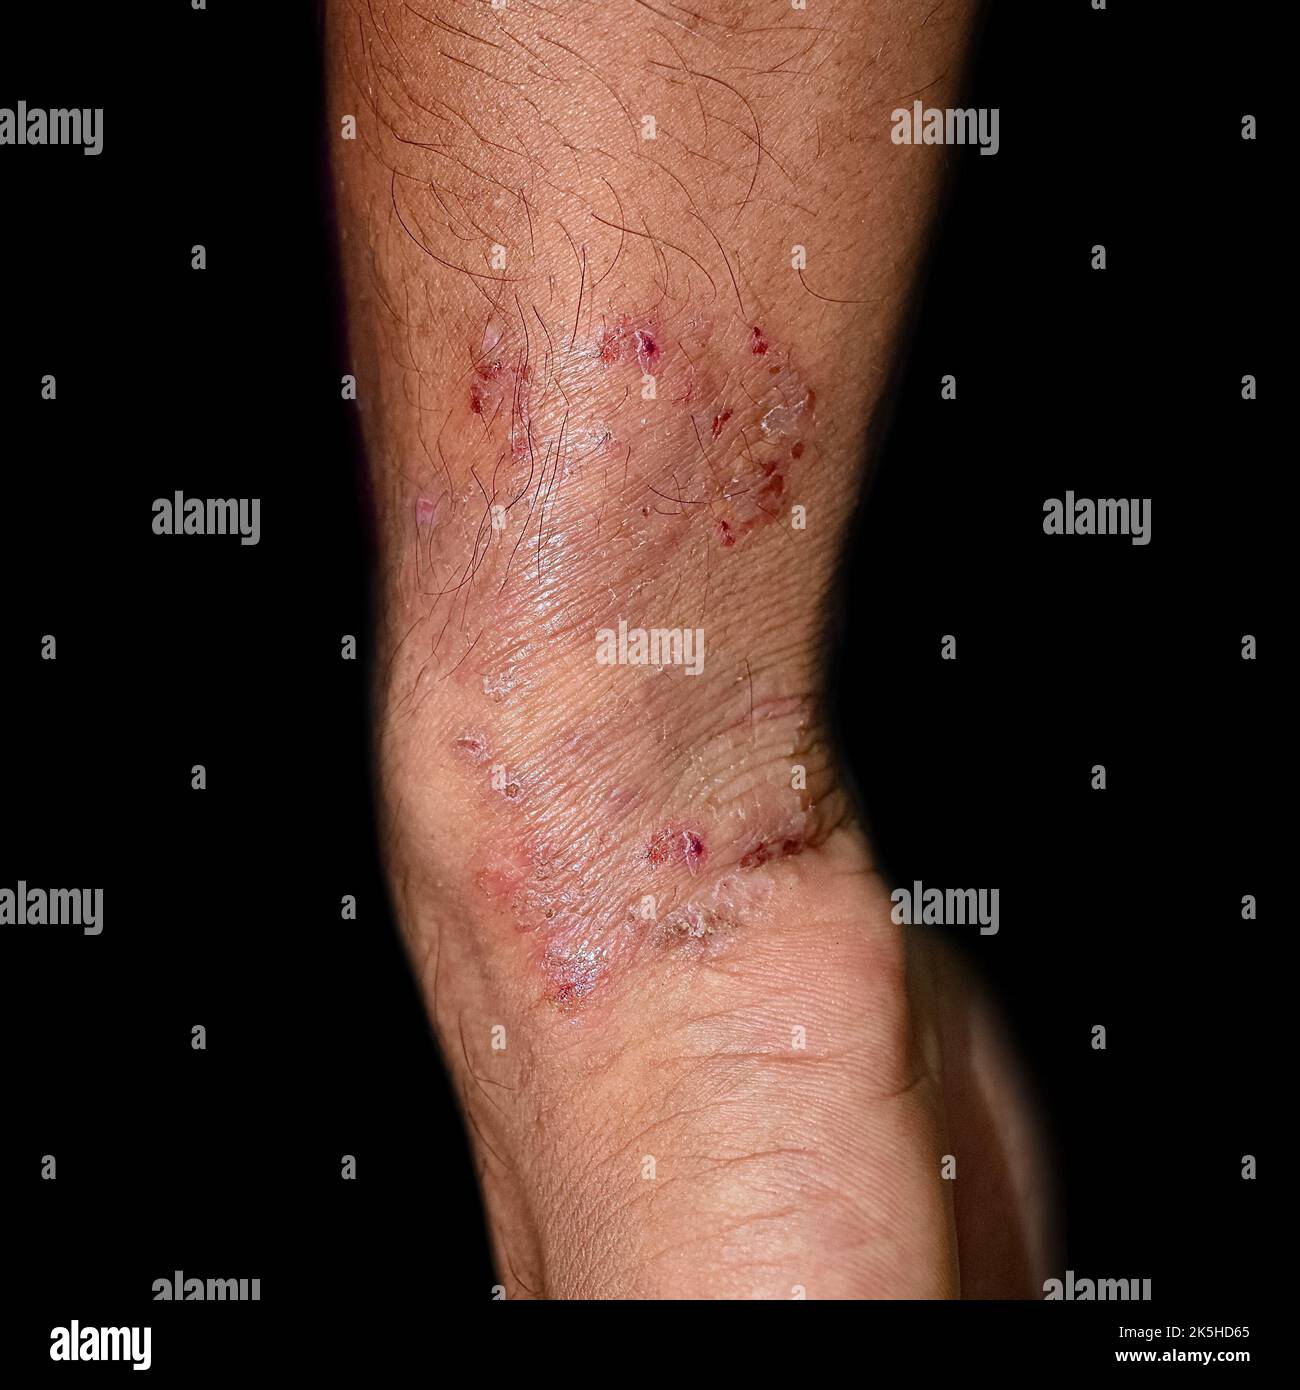 Pilzinfektion namens Tinea corporis im Unterarm des südostasiatischen Mannes. Stockfoto